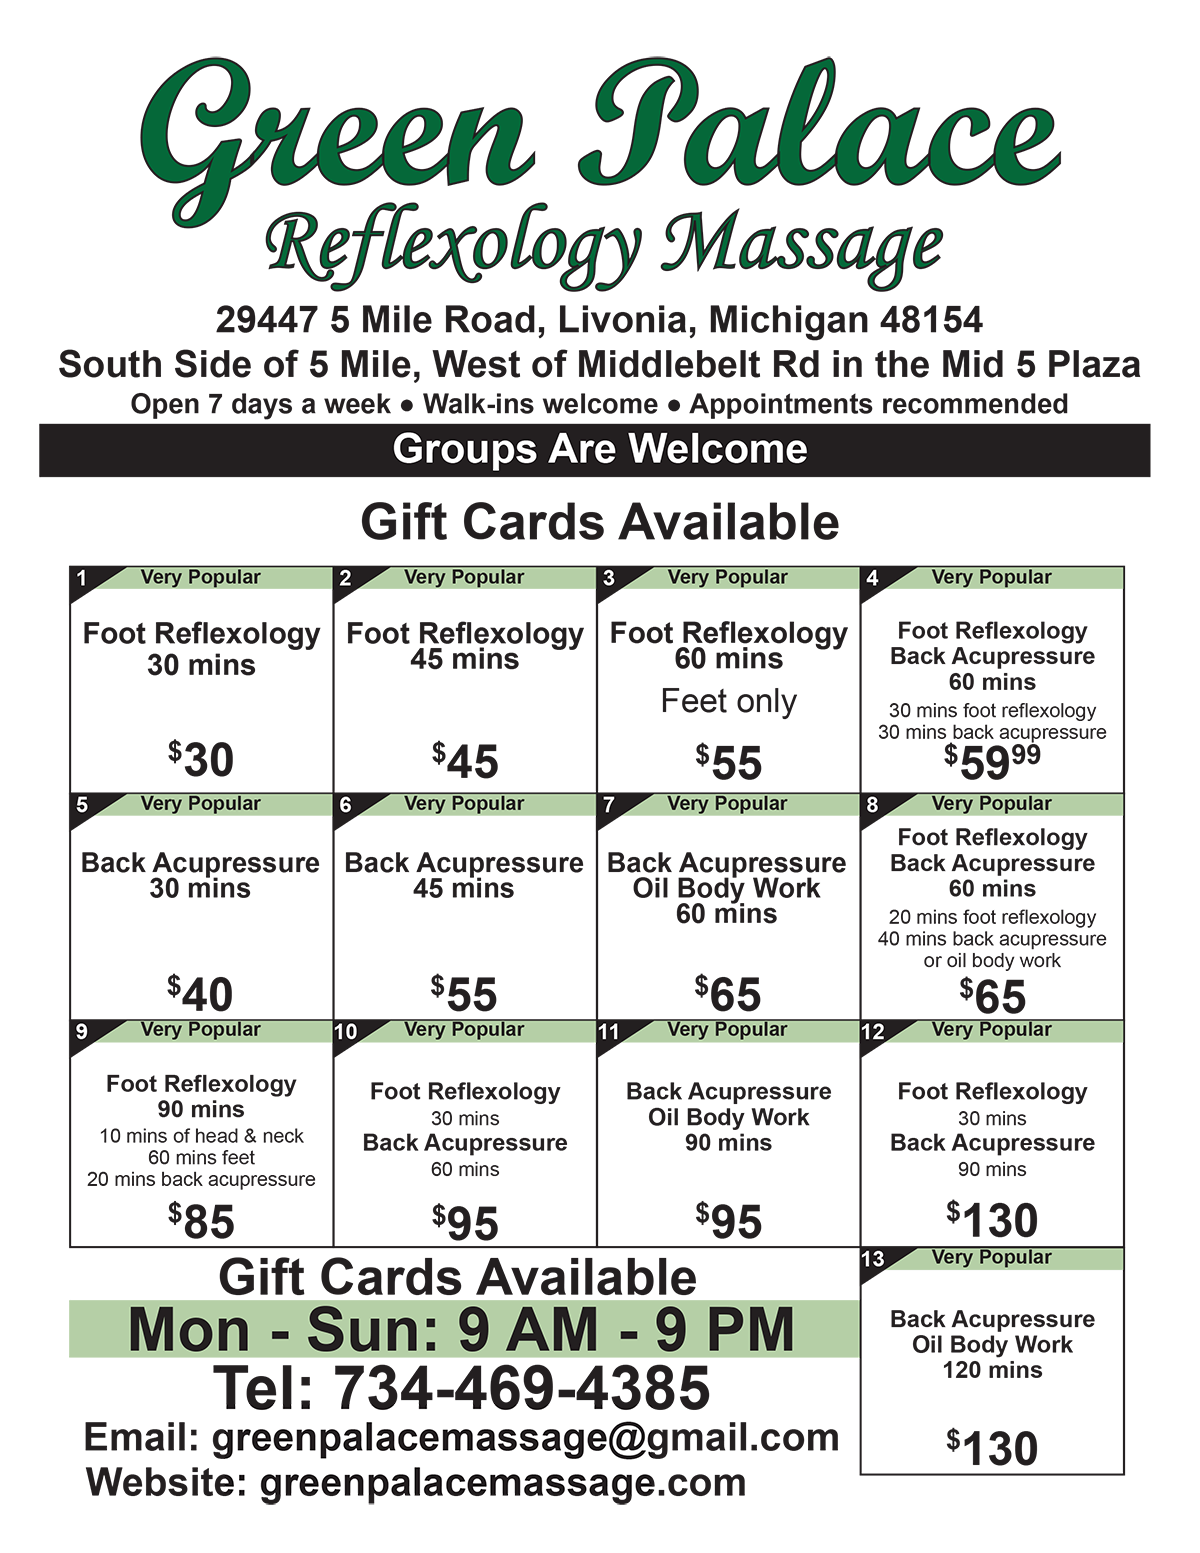 Green Palace Reflexology Massage Pricing